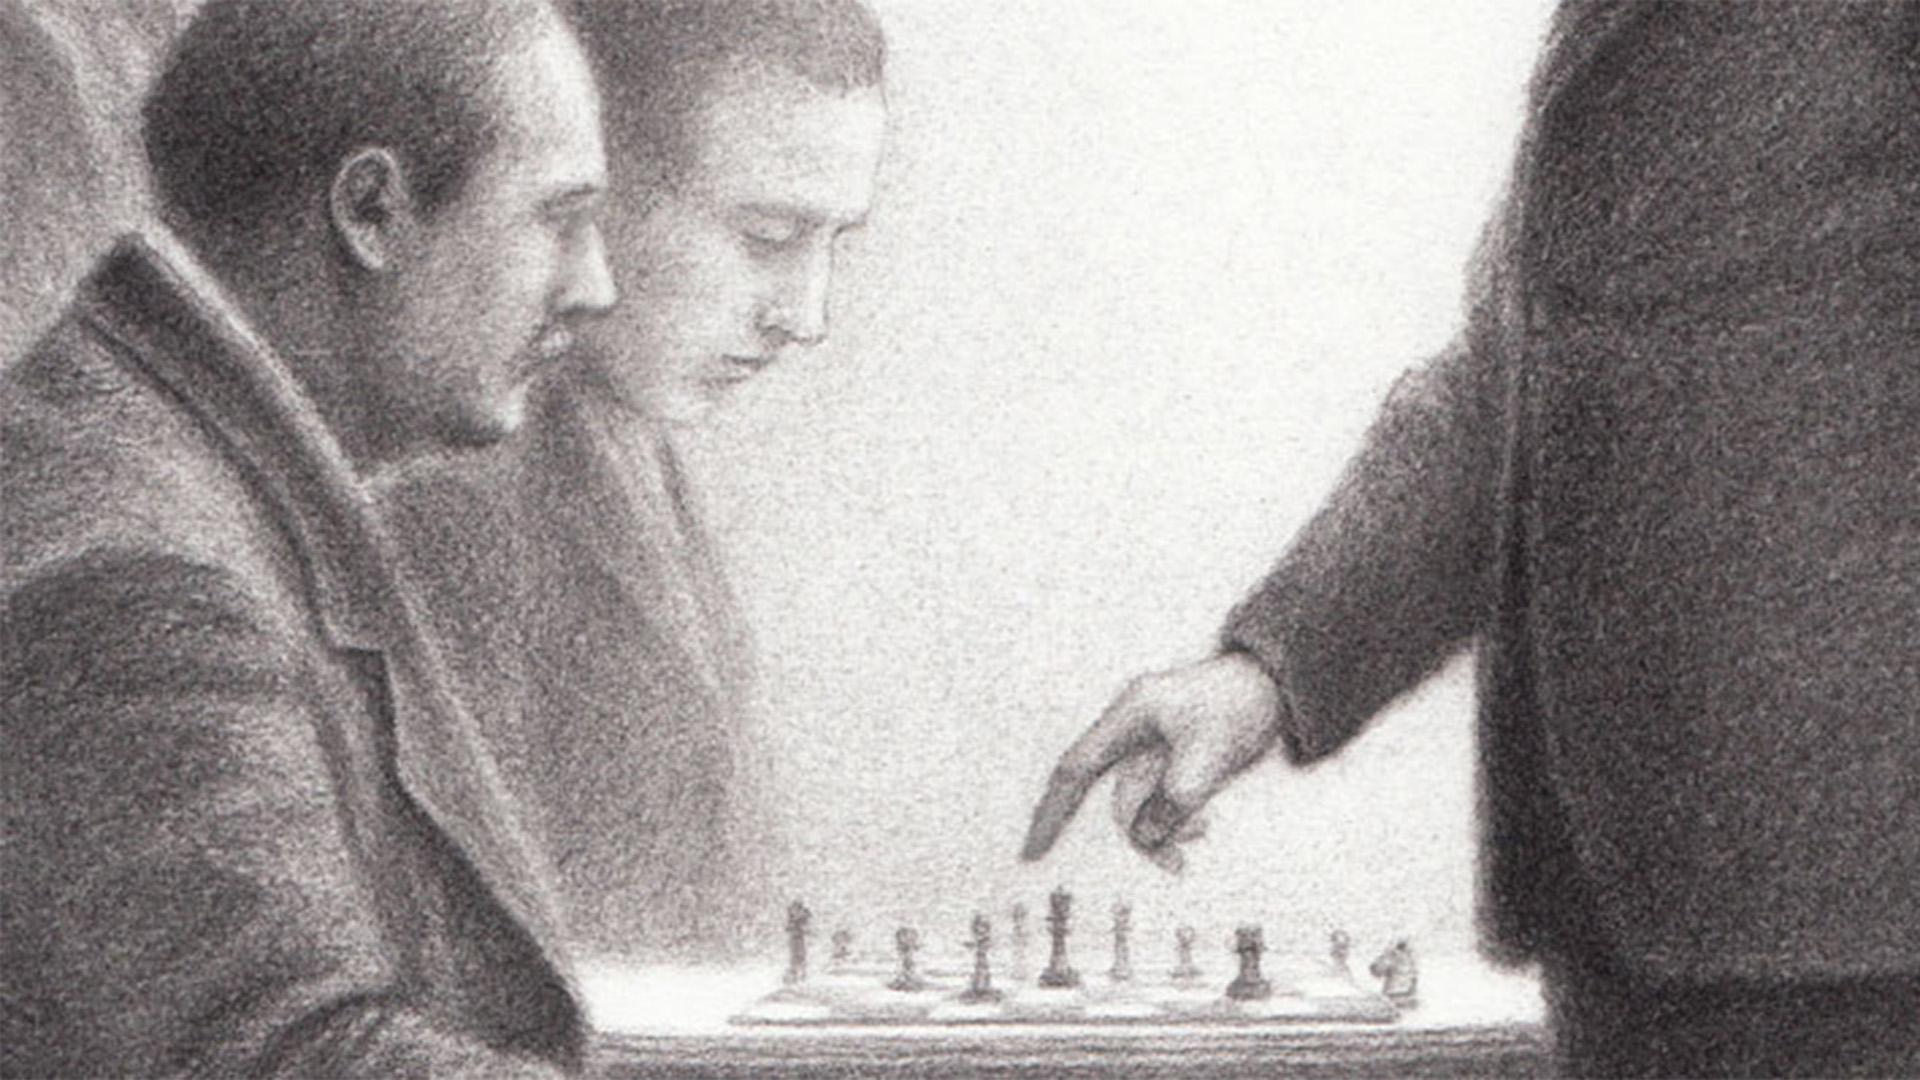 Piezas de ajedrez. Artículo de la Enciclopedia.